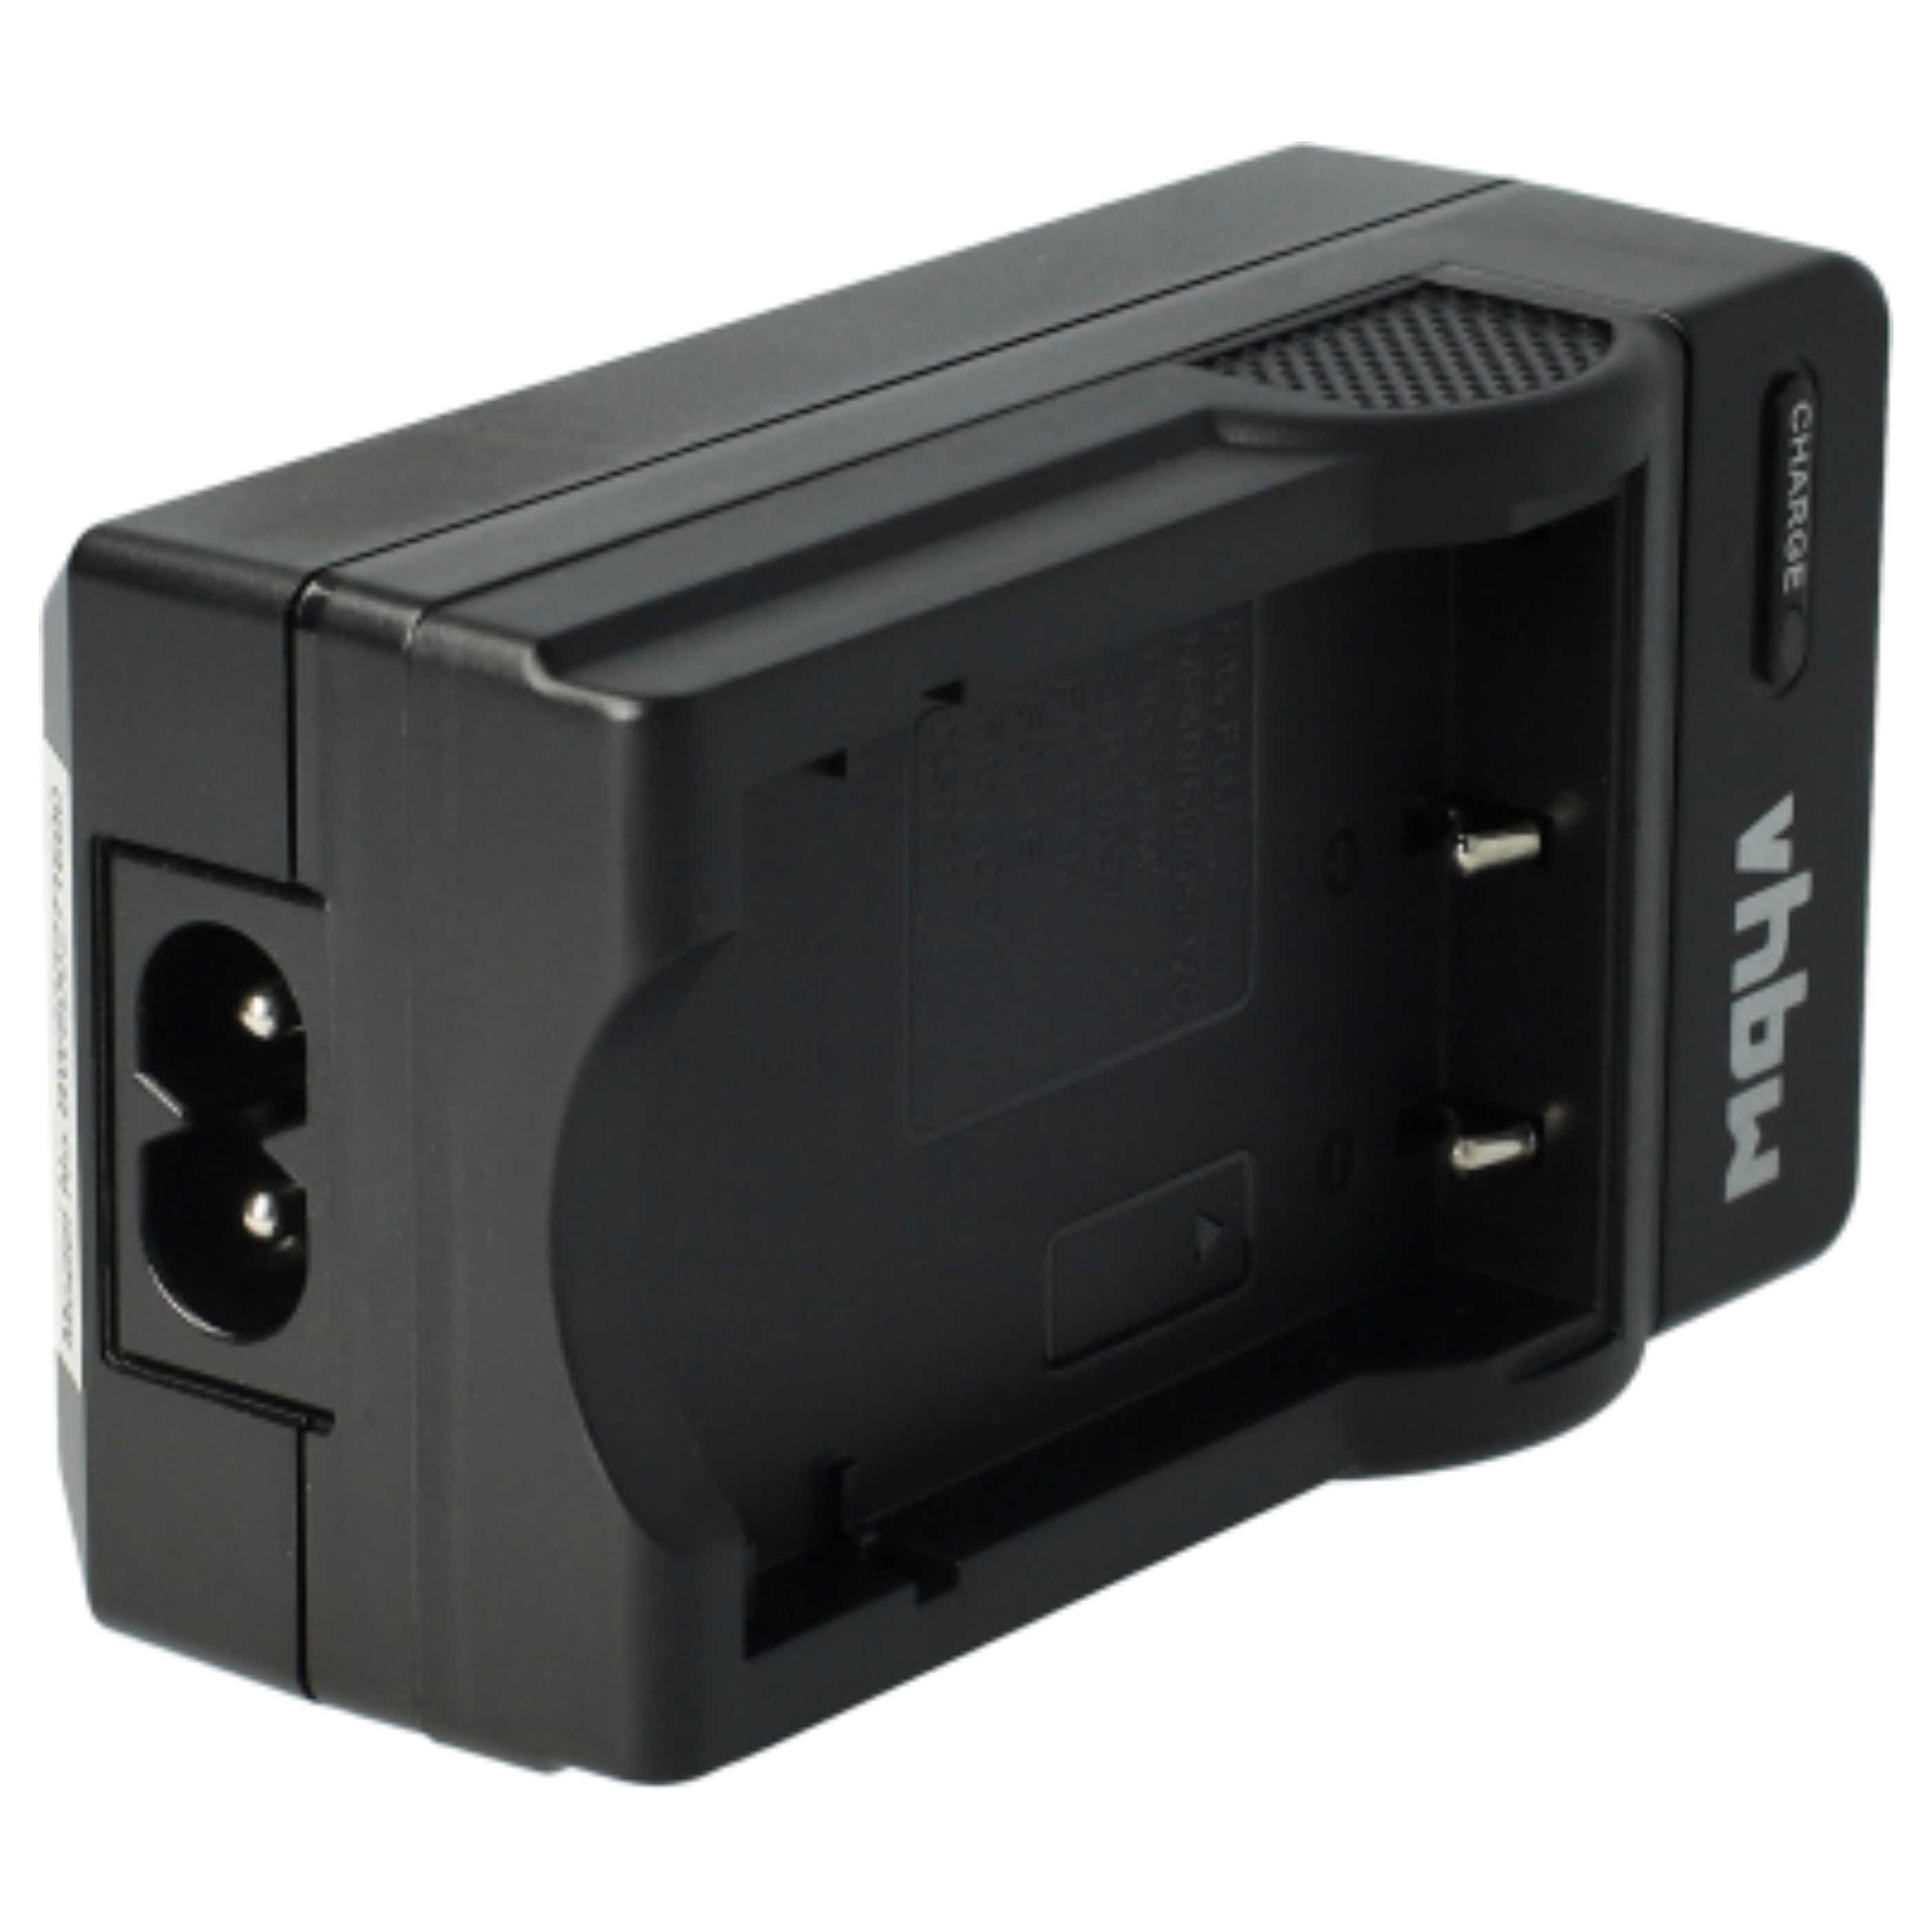 Akku Ladegerät passend für EasyShare C763 Kamera u.a. - 0,6 A, 4,2 V